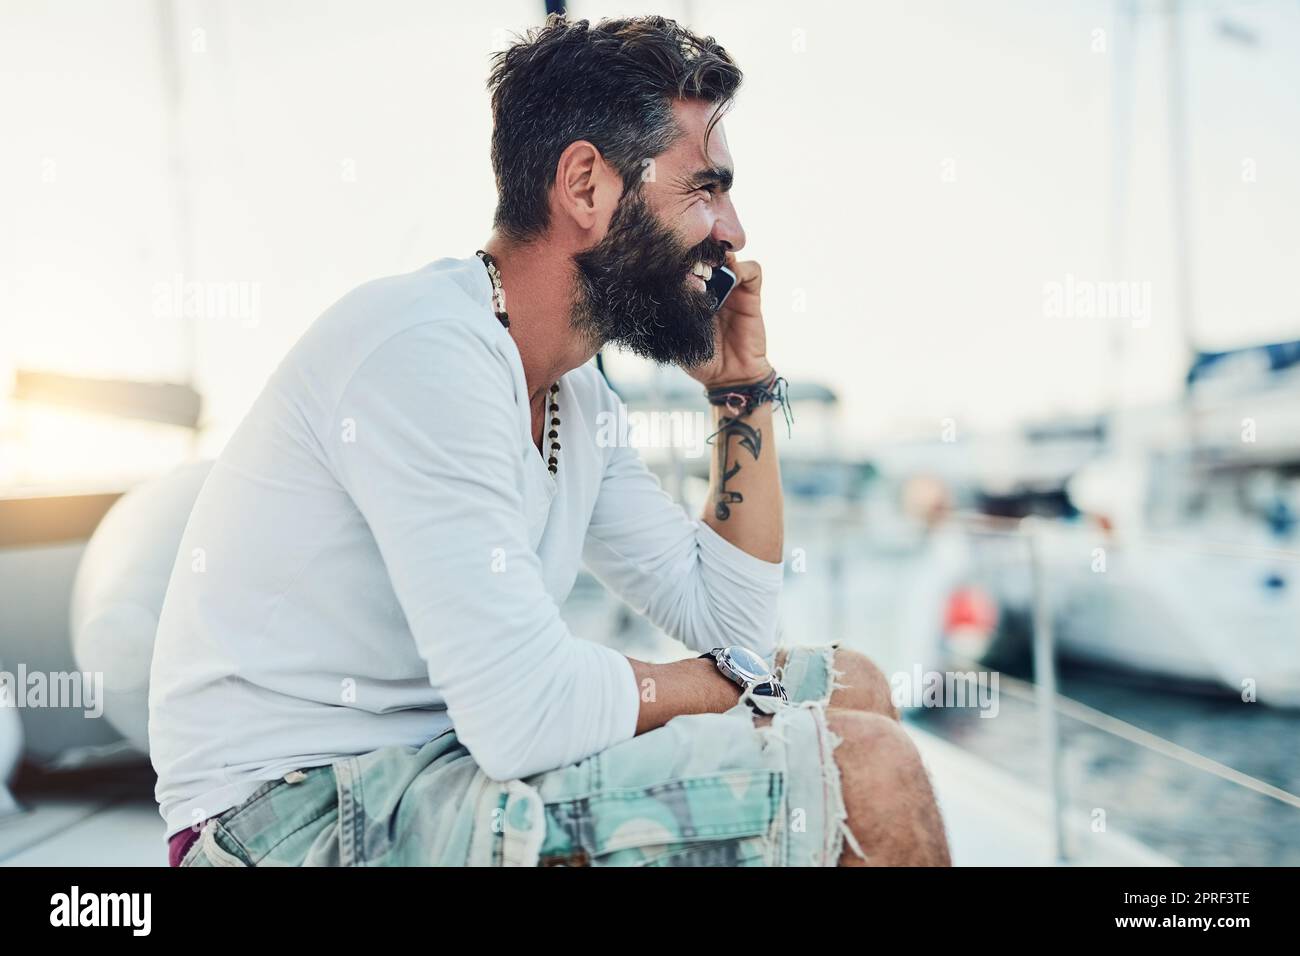 Ein Mann, der auf seiner Yacht sitzt und am Telefon telefoniert. Stockfoto